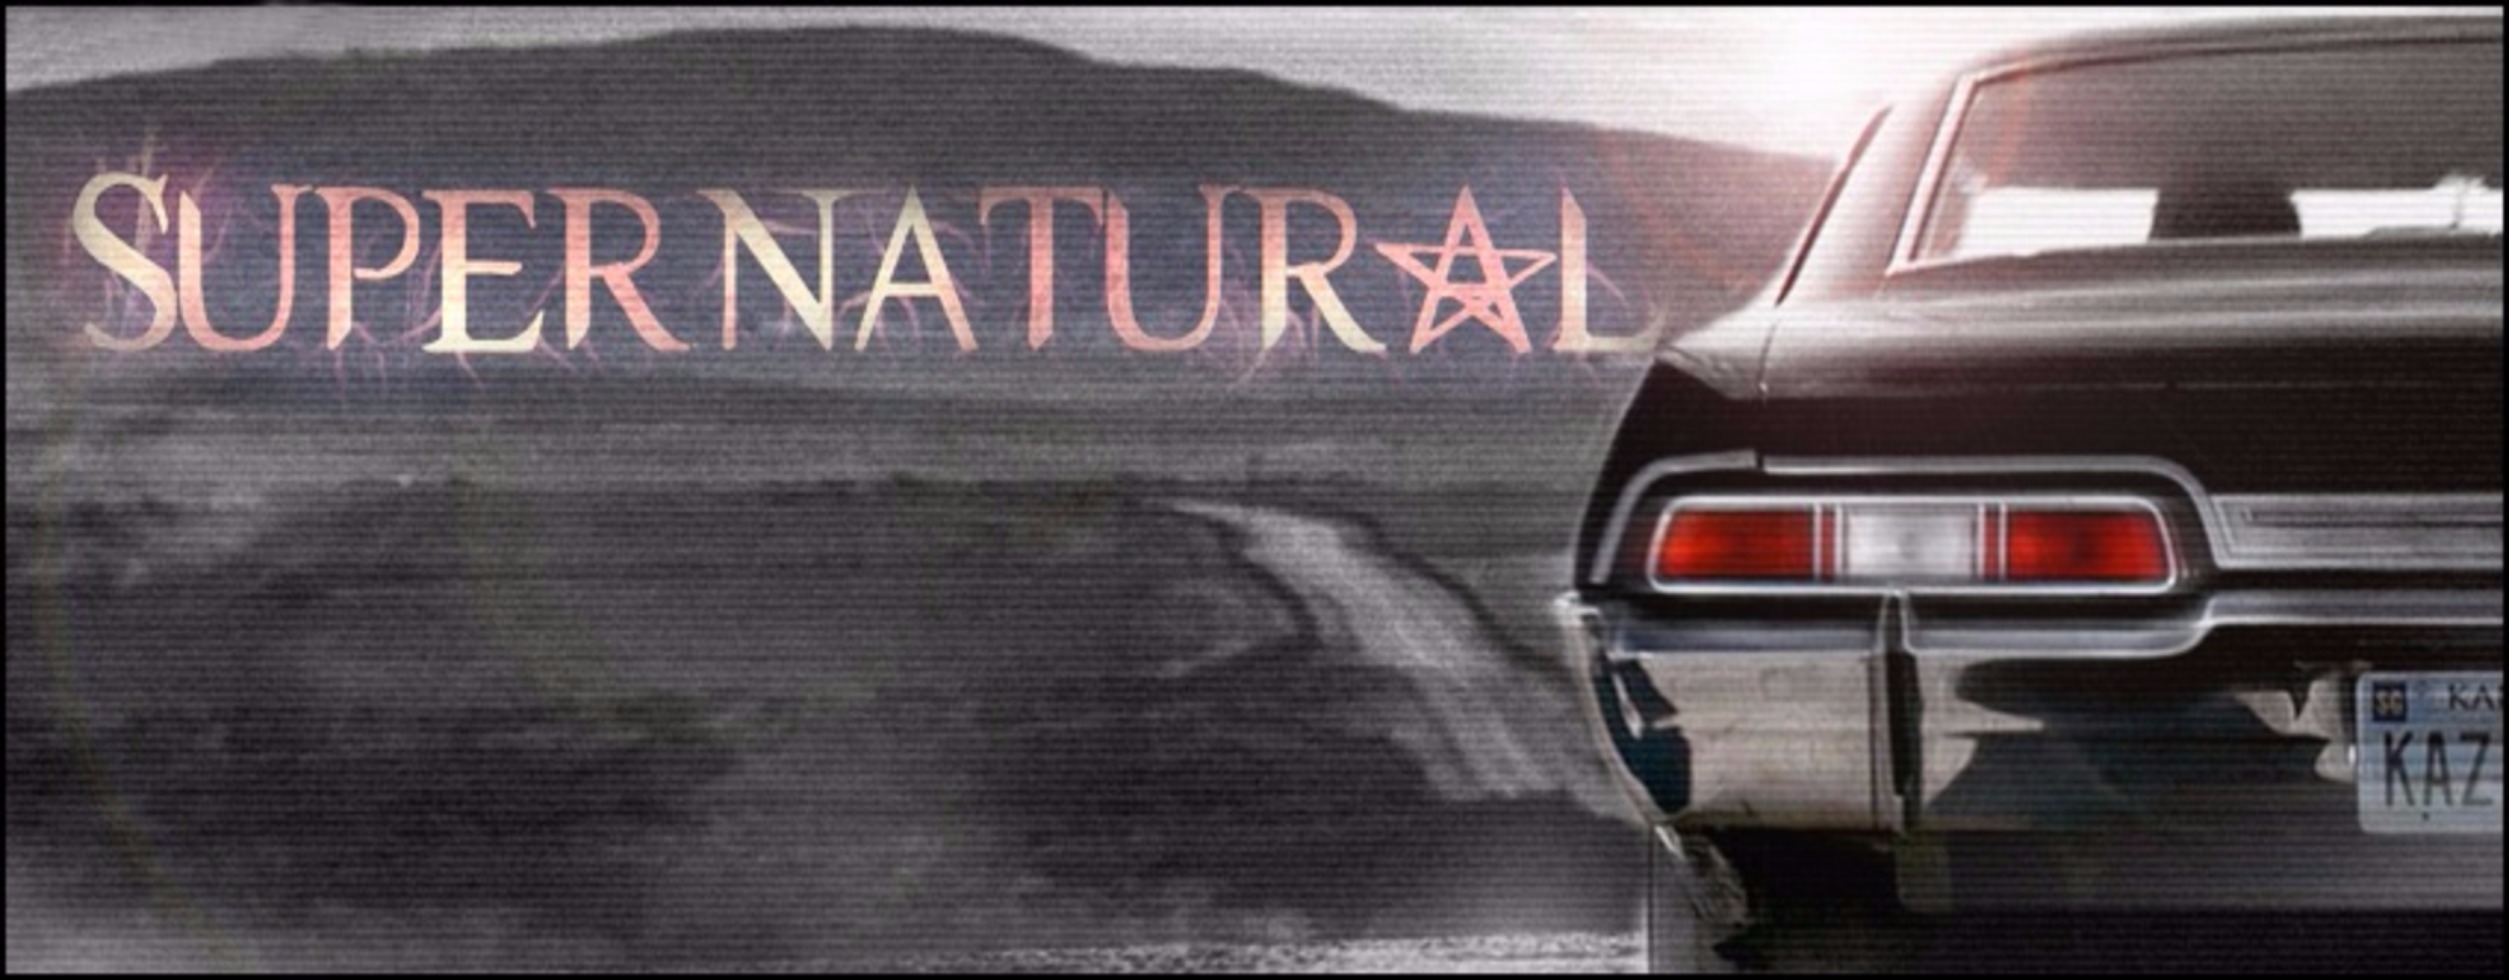 Supernatural_Chevy_Impala